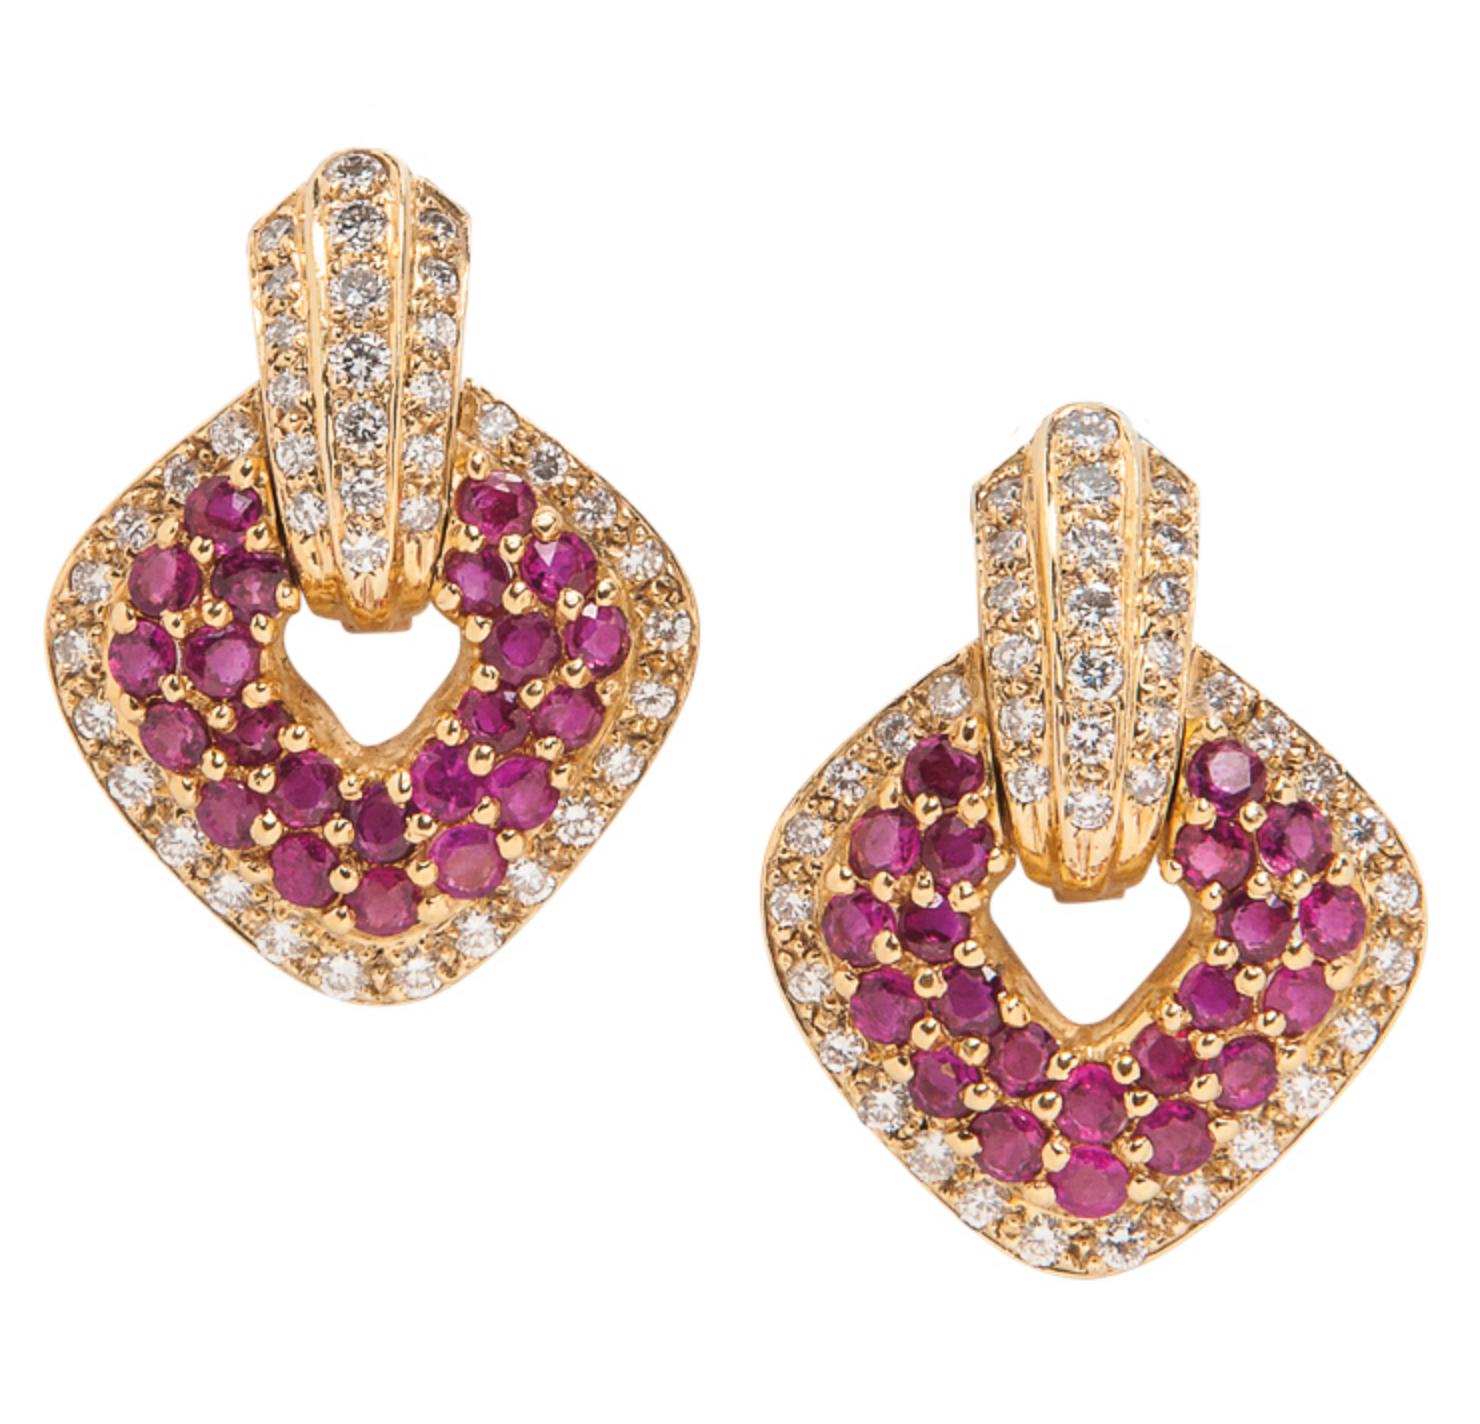 Boucles d'oreilles en or jaune 18 carats contenant des rubis ronds de taille brillante et environ 1,80 carats de diamants ronds de taille pleine.